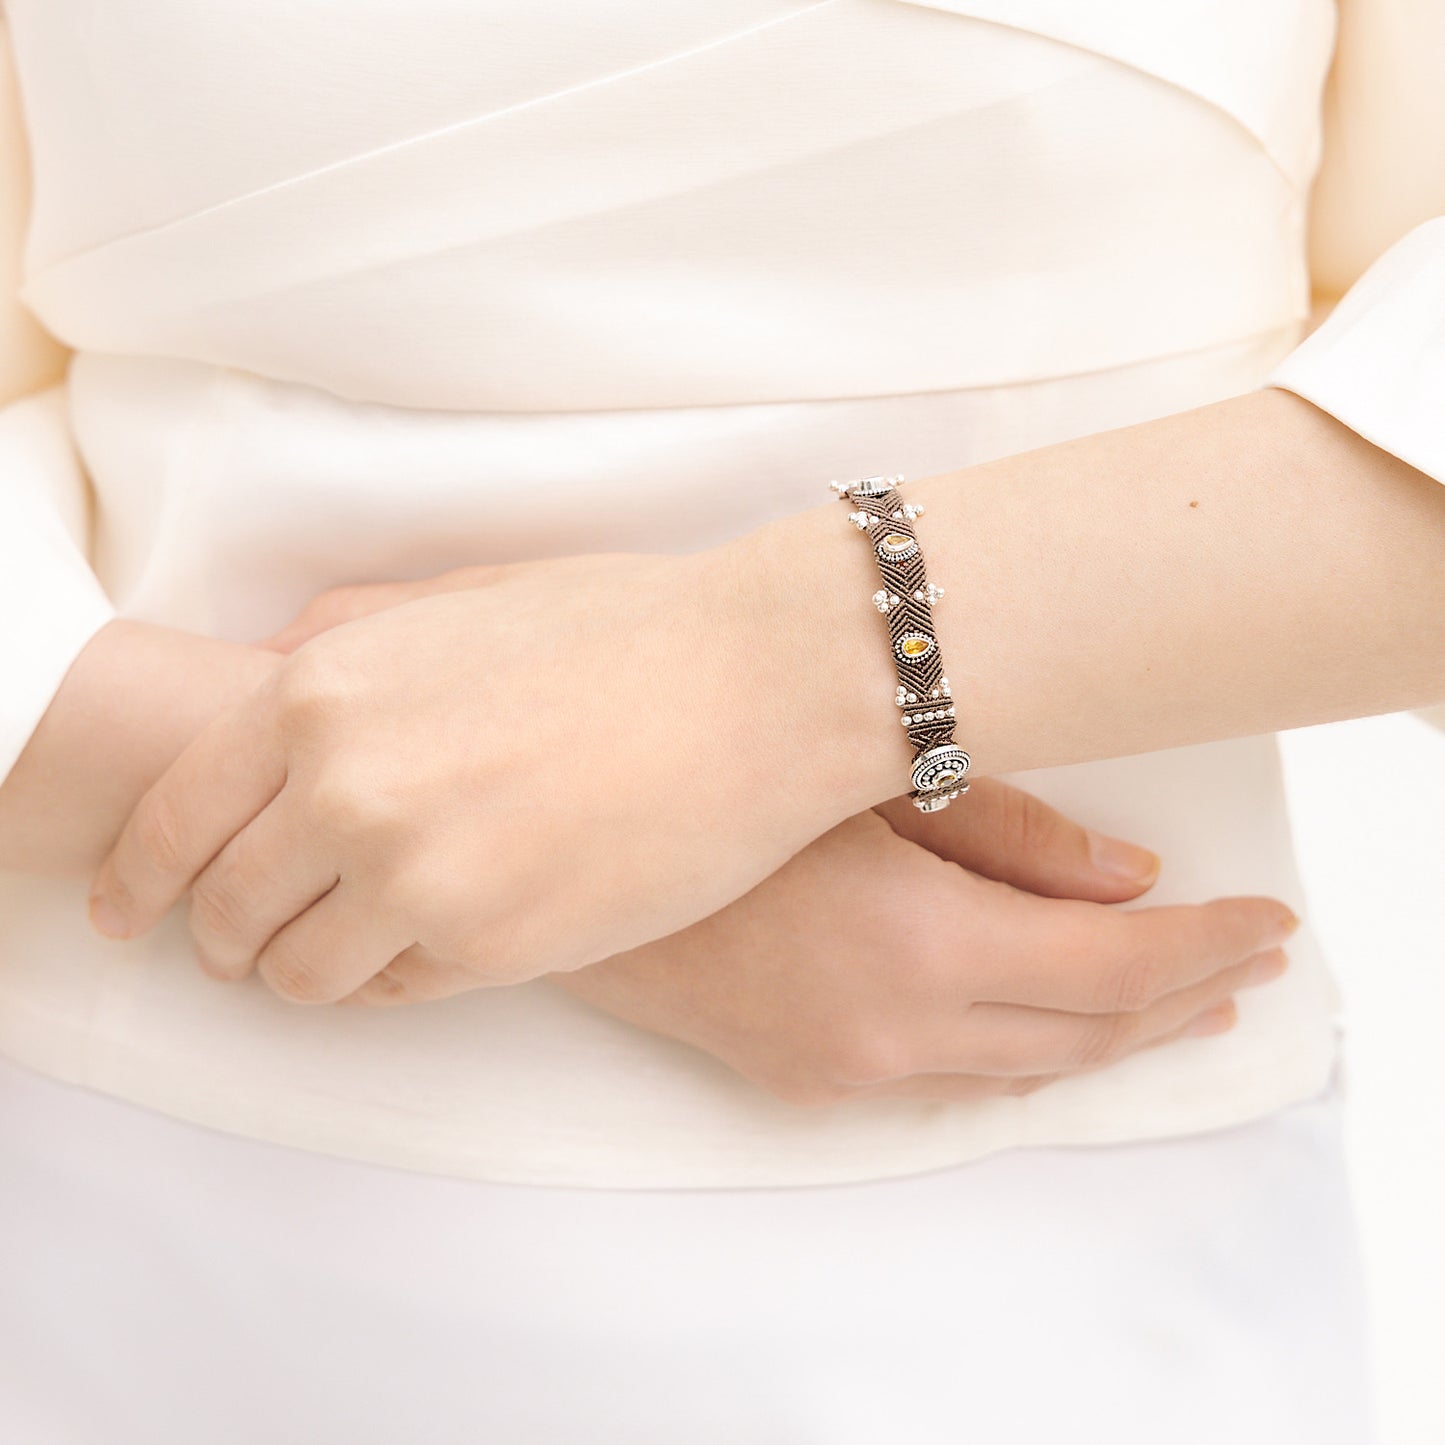 DEL bracelet with citrine